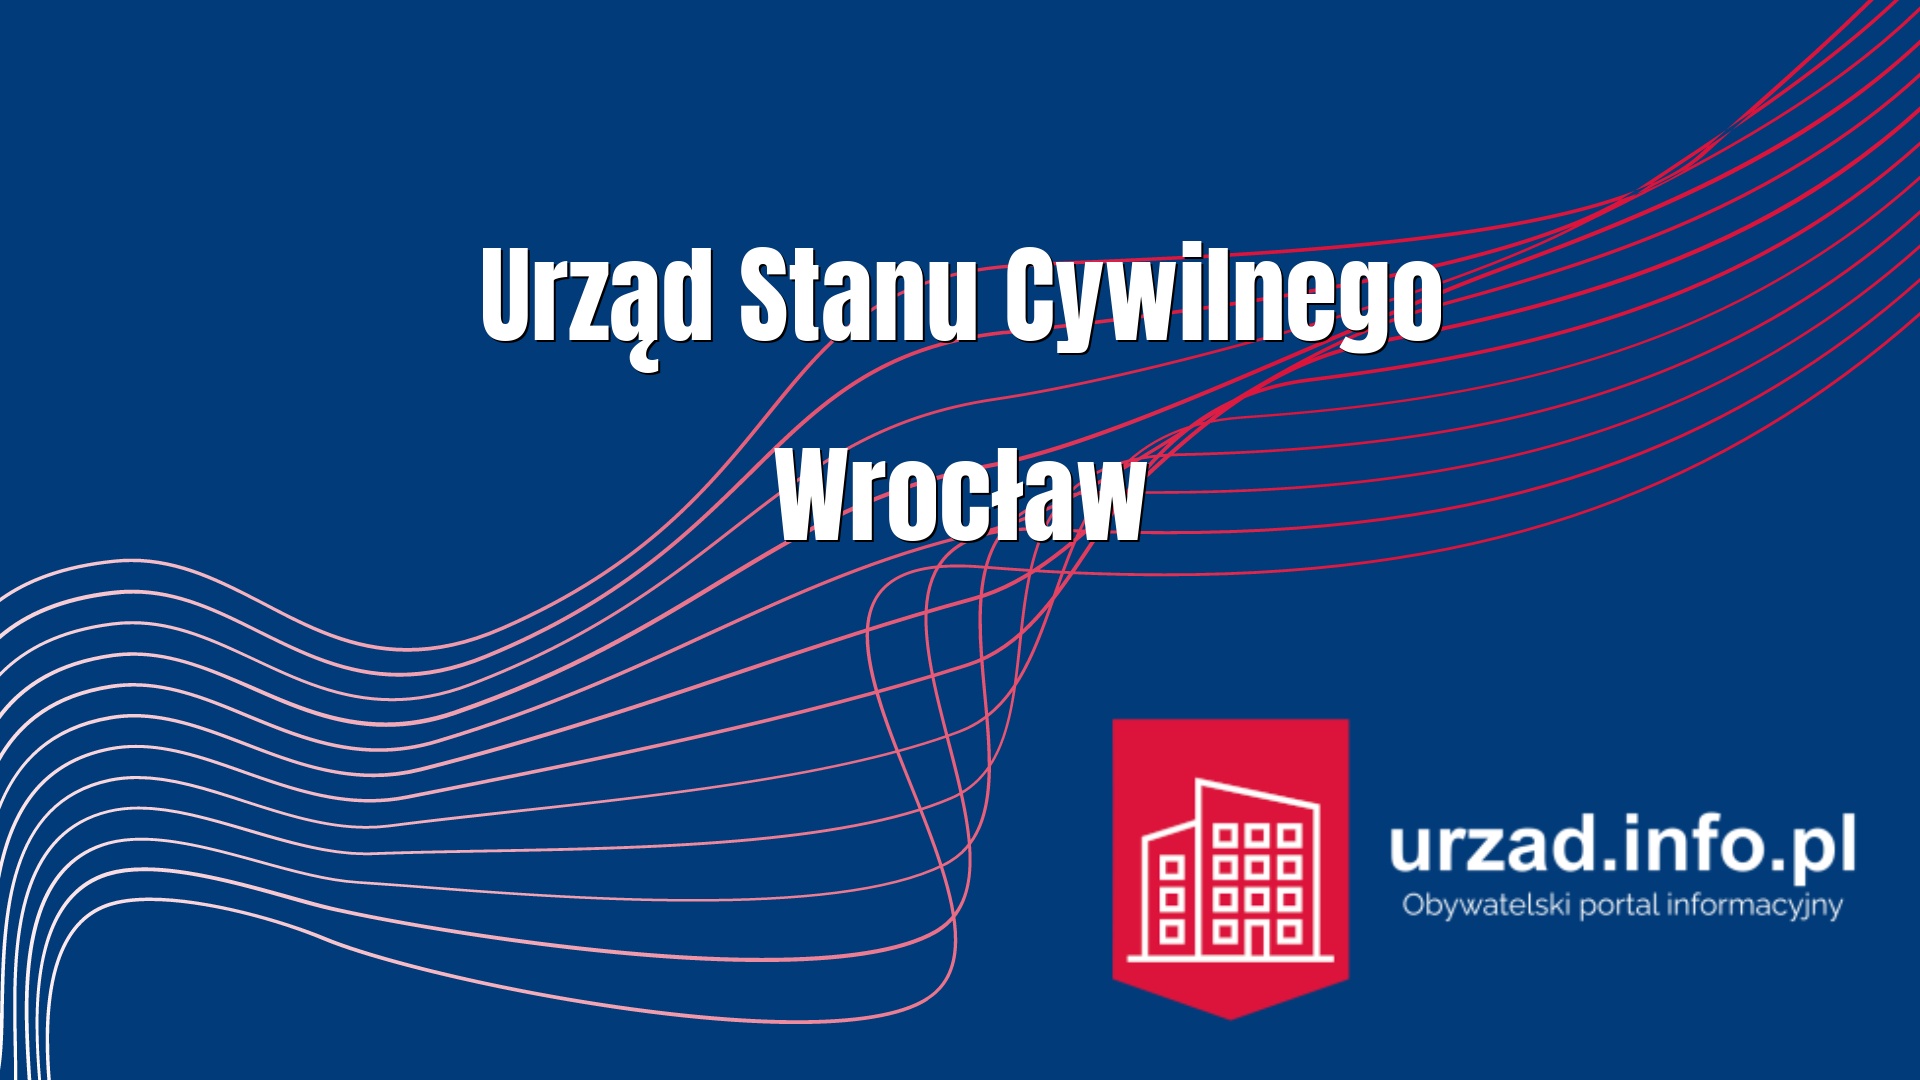 Urząd Stanu Cywilnego Wrocław